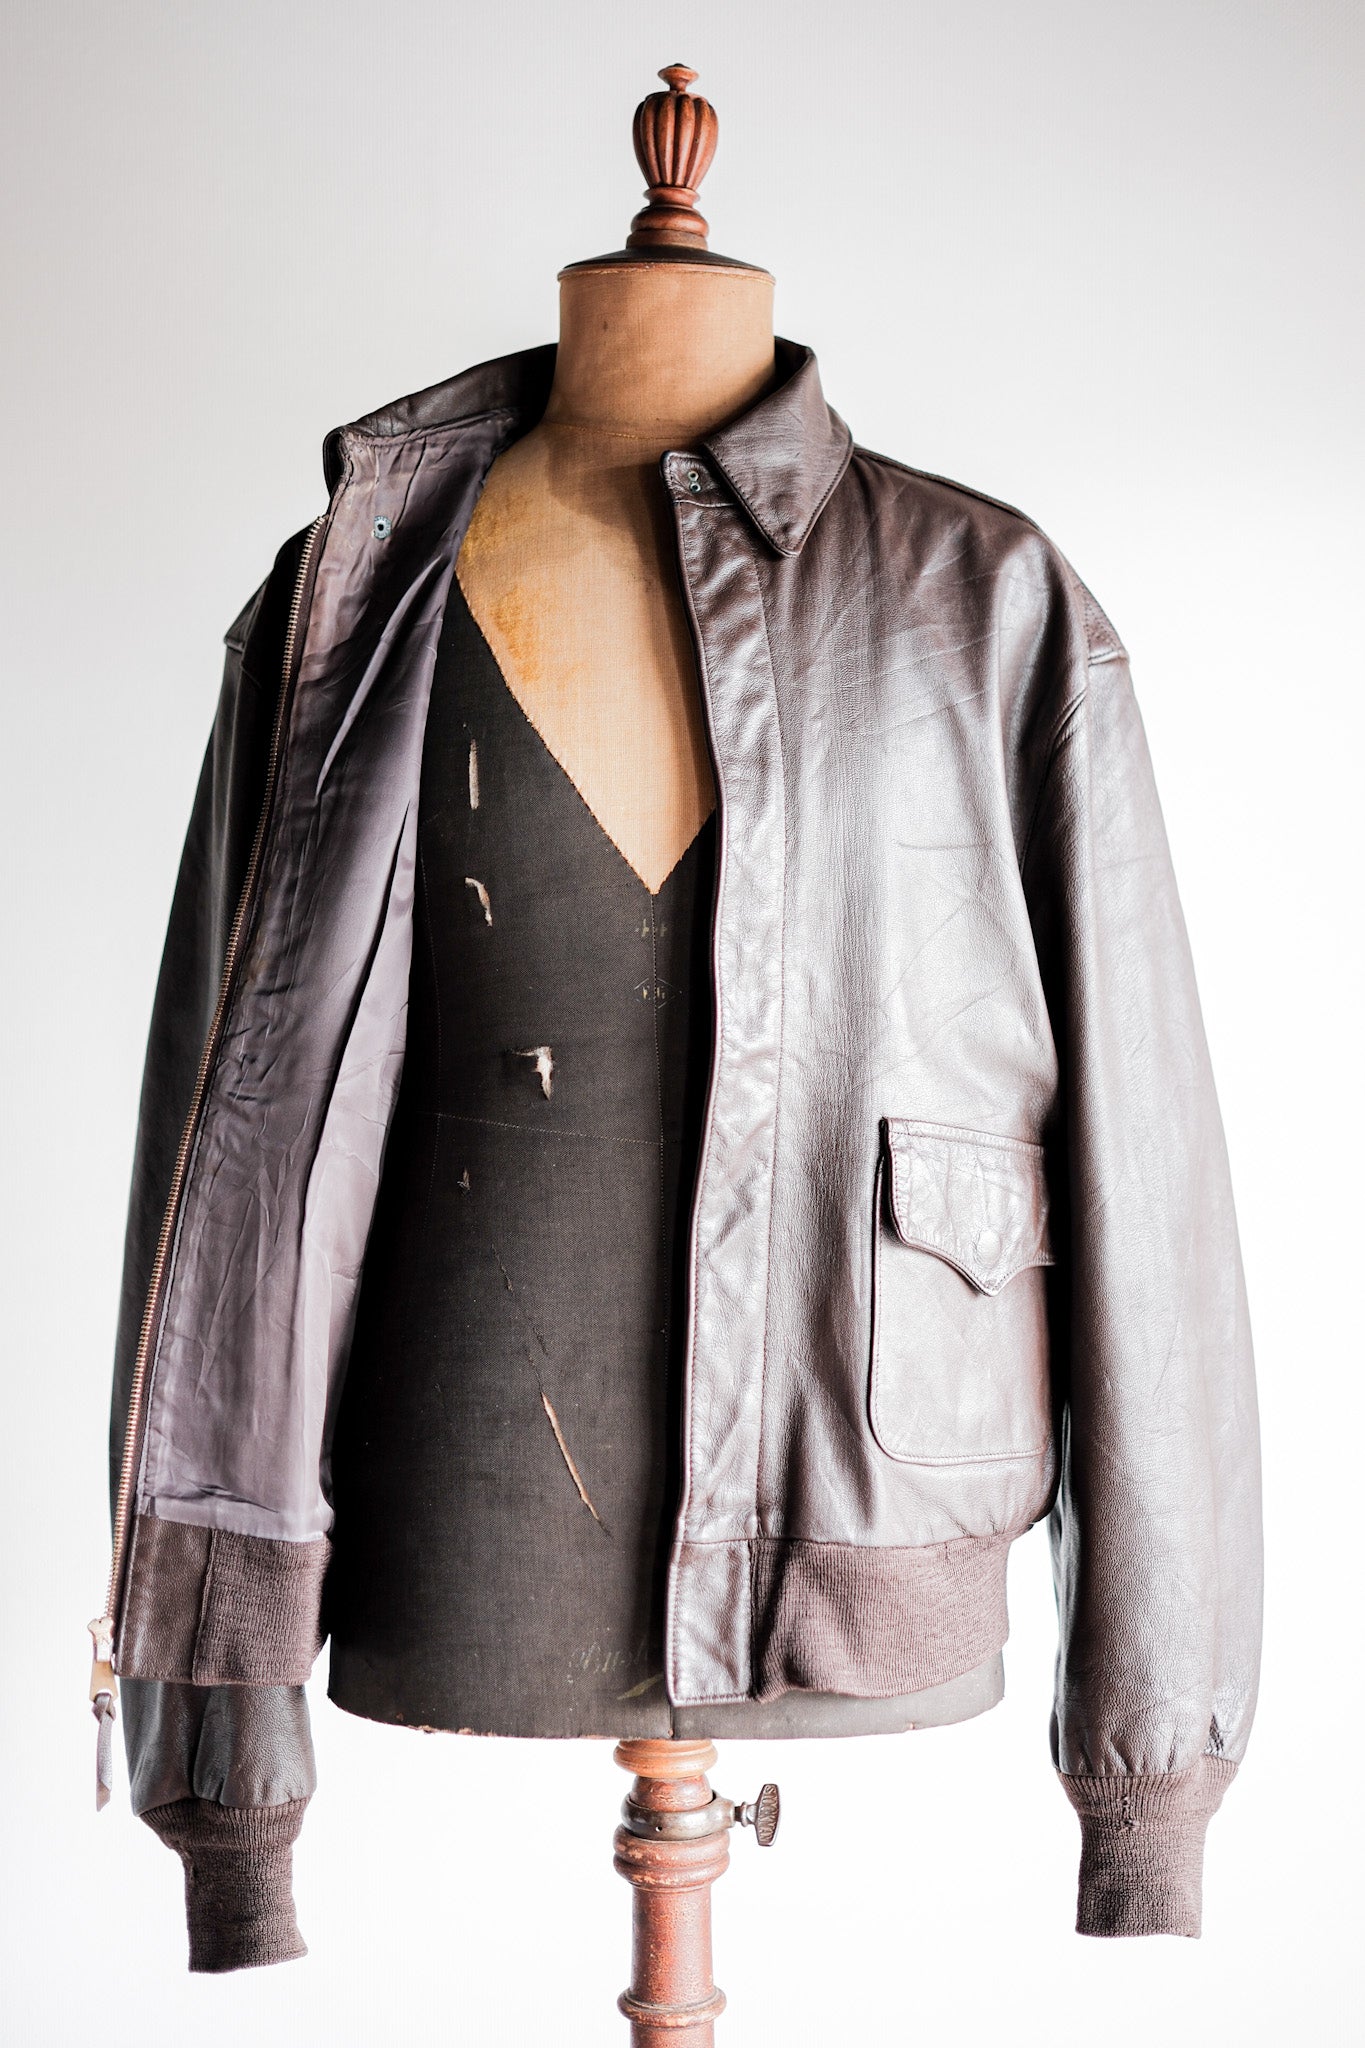 [〜80年代] Willis＆Geiger A-2型皮革飛行夾克尺寸。44“在美國製造”。